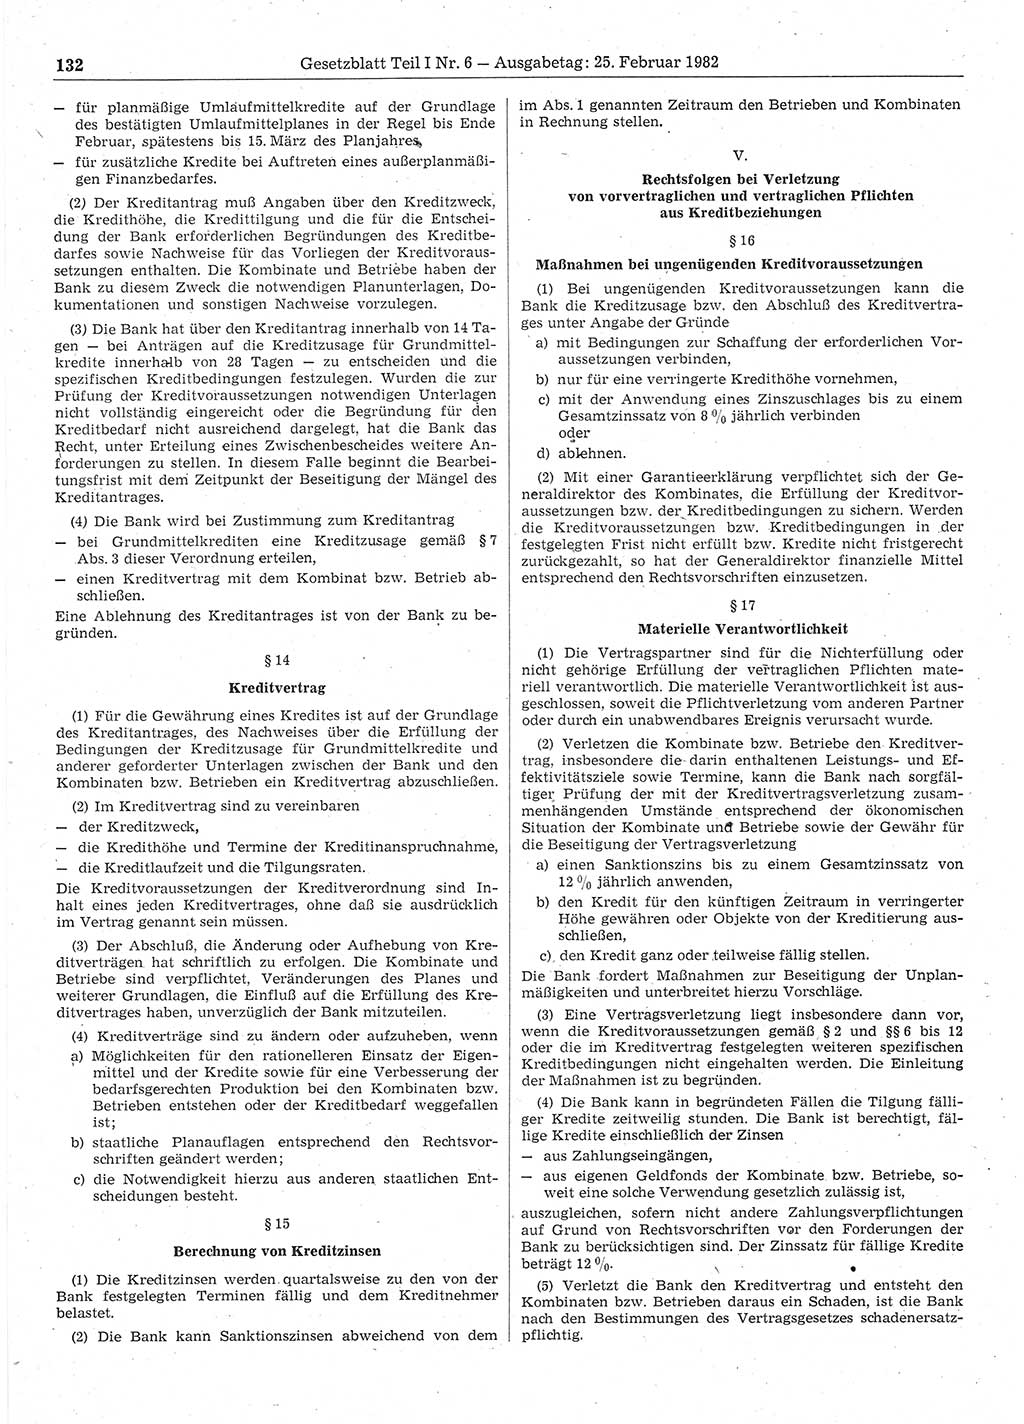 Gesetzblatt (GBl.) der Deutschen Demokratischen Republik (DDR) Teil Ⅰ 1982, Seite 132 (GBl. DDR Ⅰ 1982, S. 132)